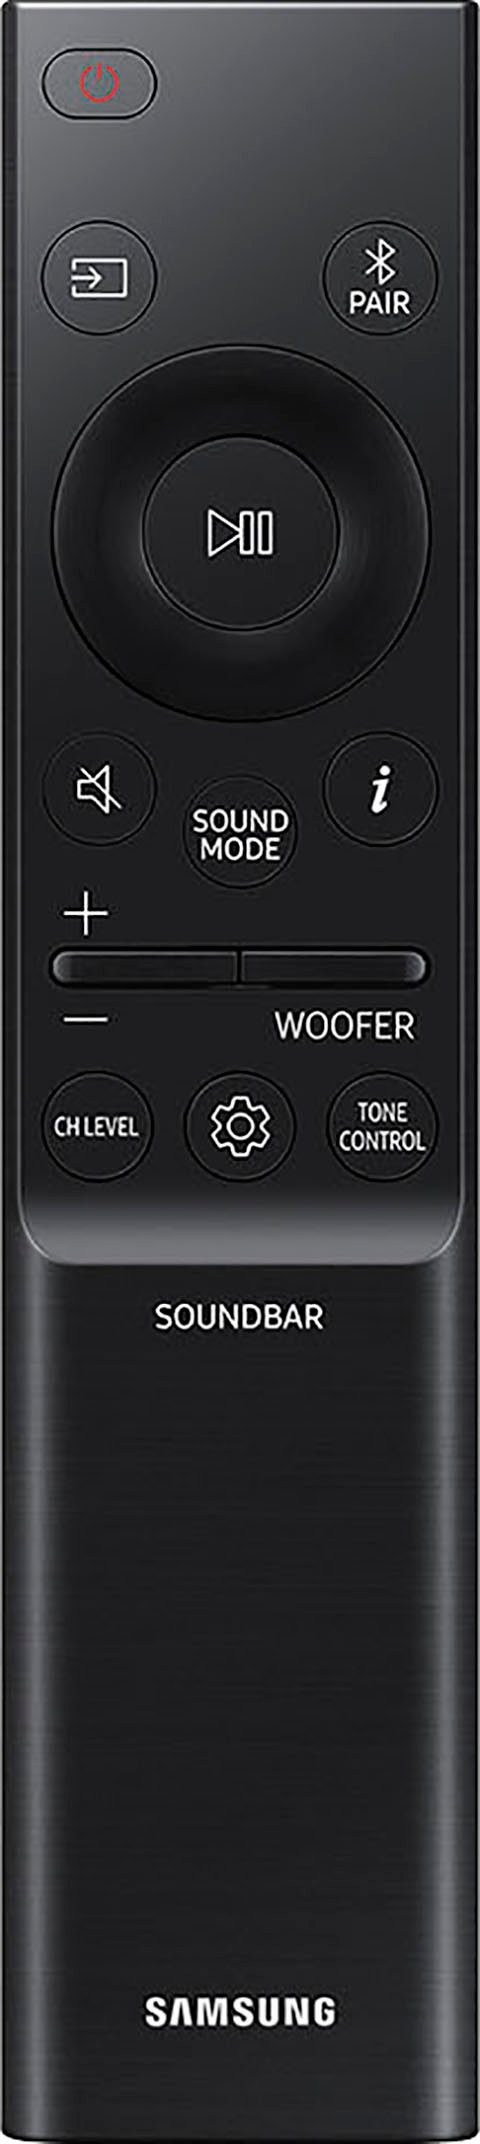 Samsung HW-Q935GC Soundbar dazu: 48 (540 von 39,99€, Garantie im Mon. 9.1.4-SurroundSound) Wert W, Gratis